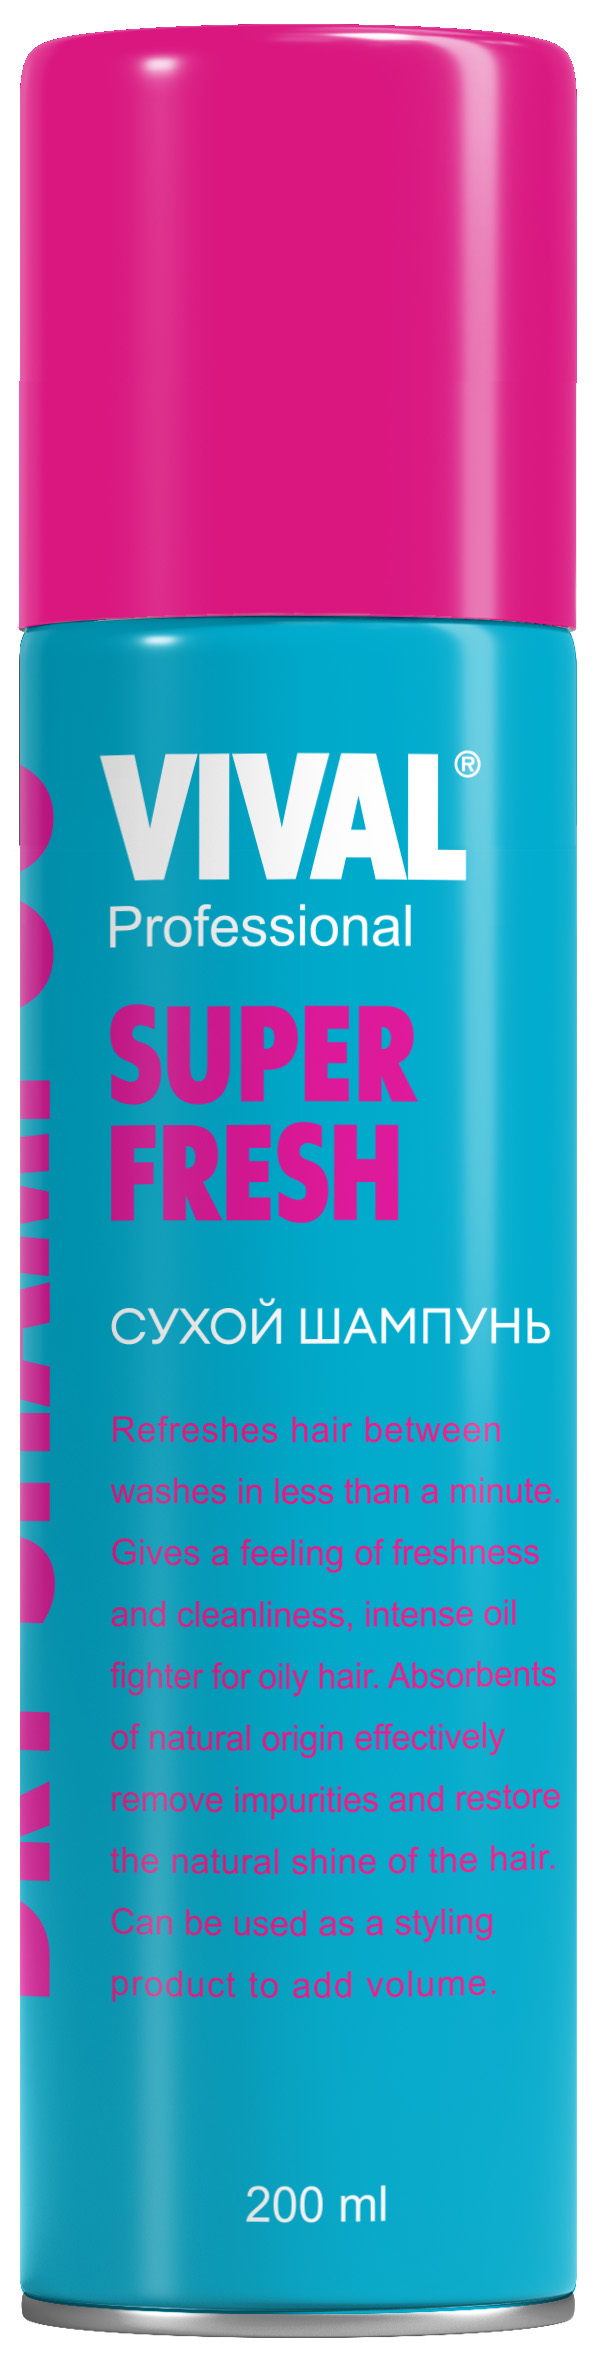 Шампунь сухой Vival Super Fresh 200 мл